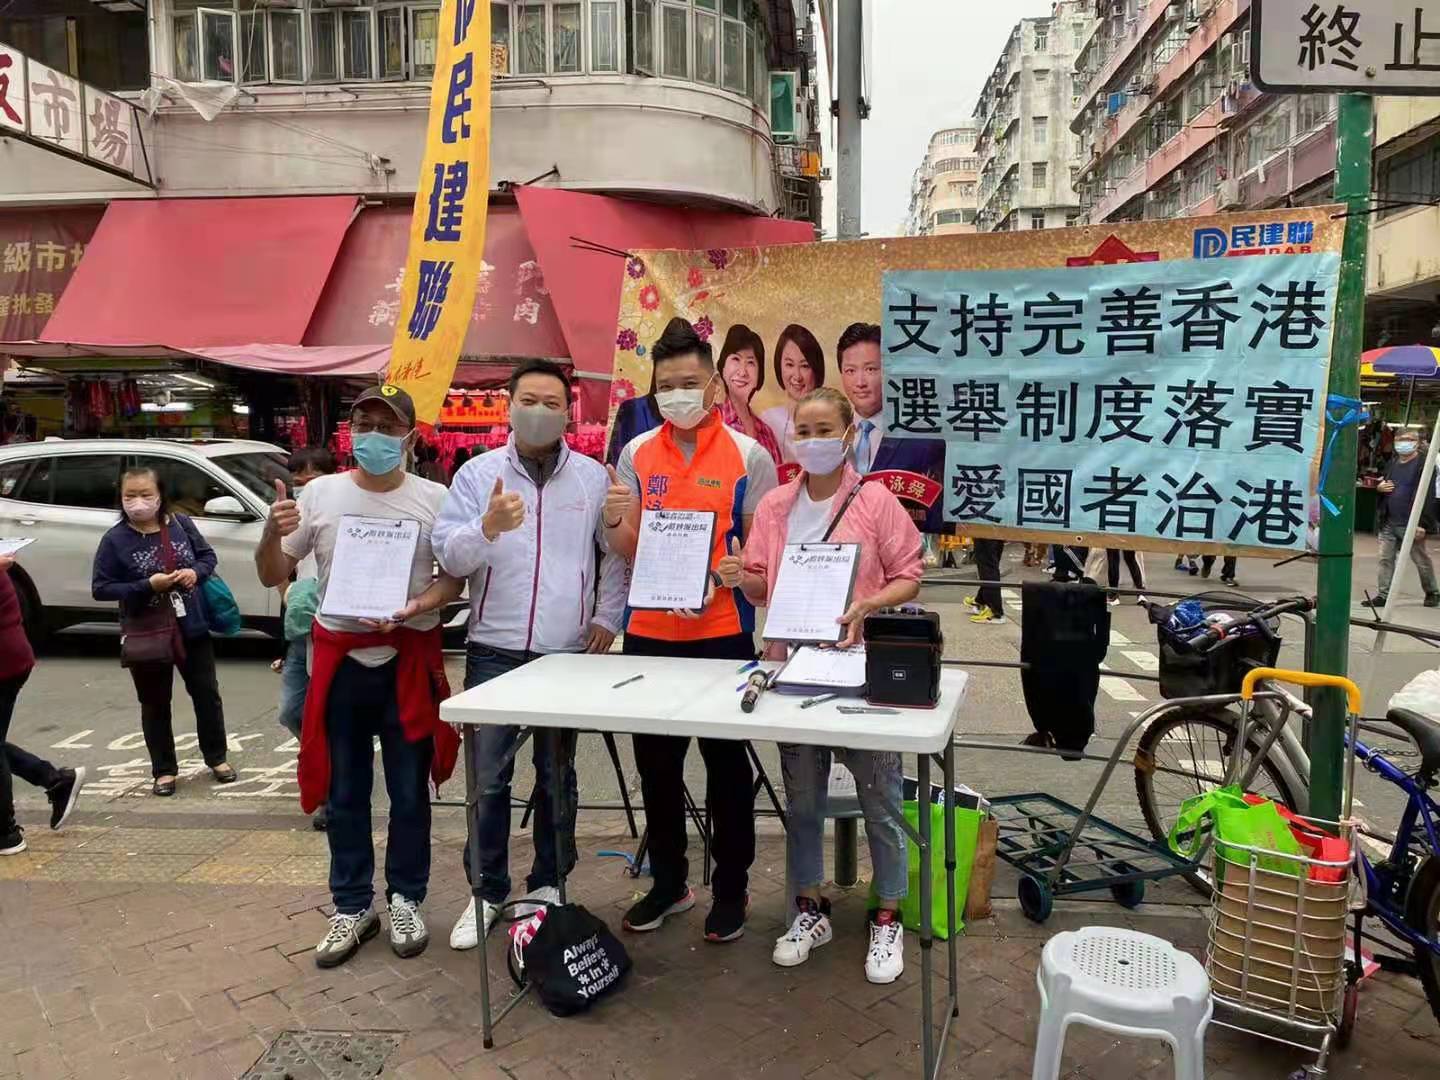 3月6日，民政事務局局長徐英偉參加立法會議員鄭泳舜街站活動，簽名支持完善選舉制度，落實「愛國者治港」。